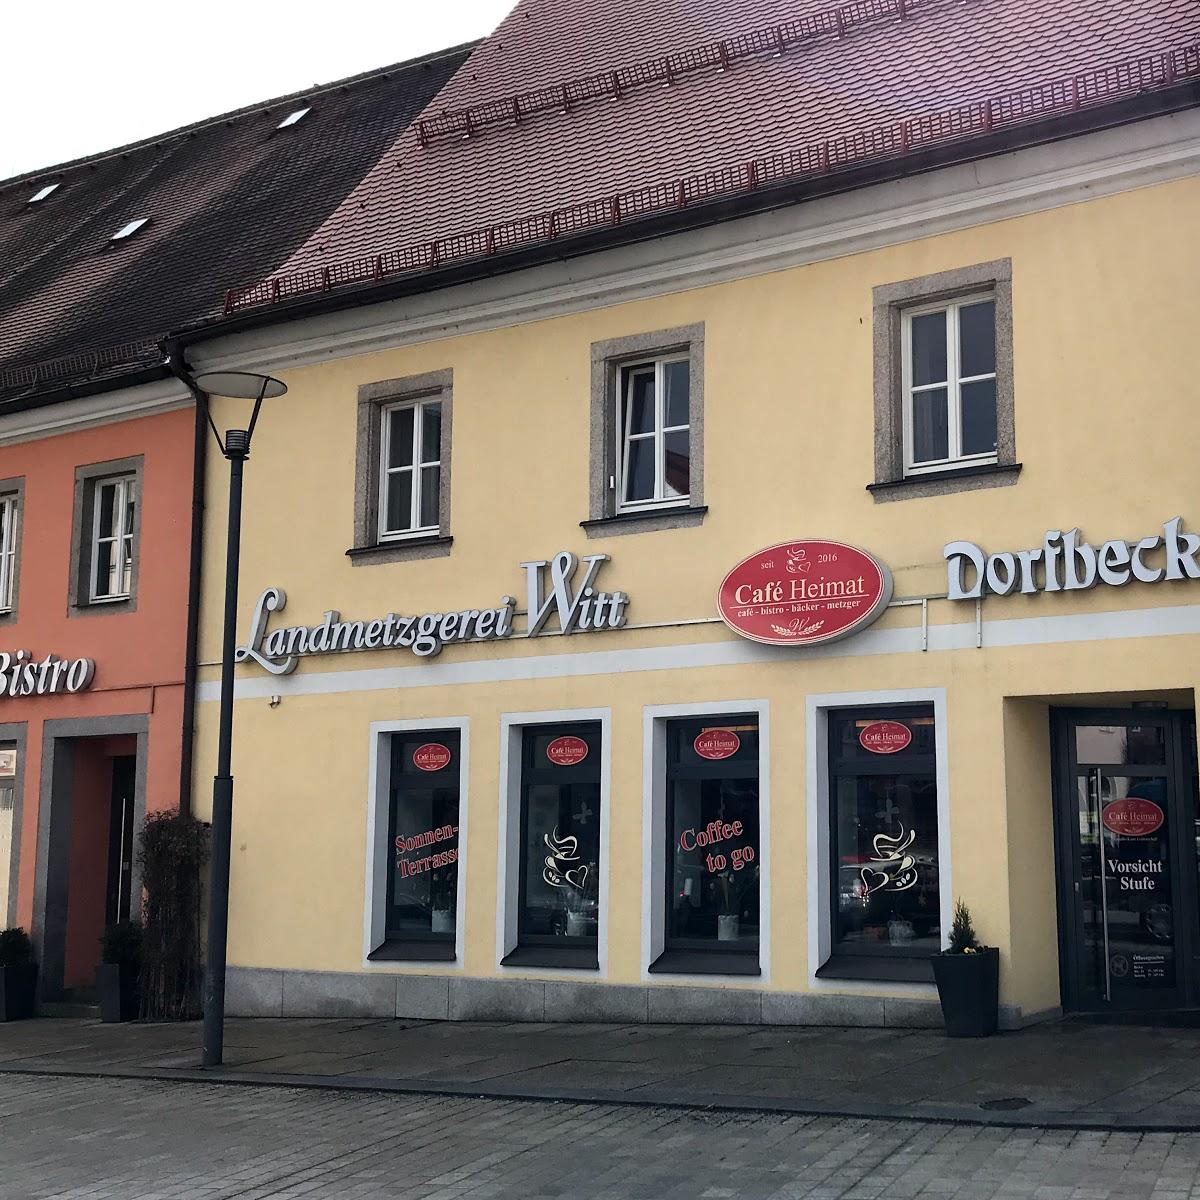 Restaurant "Landmetzgerei Witt" in Tirschenreuth